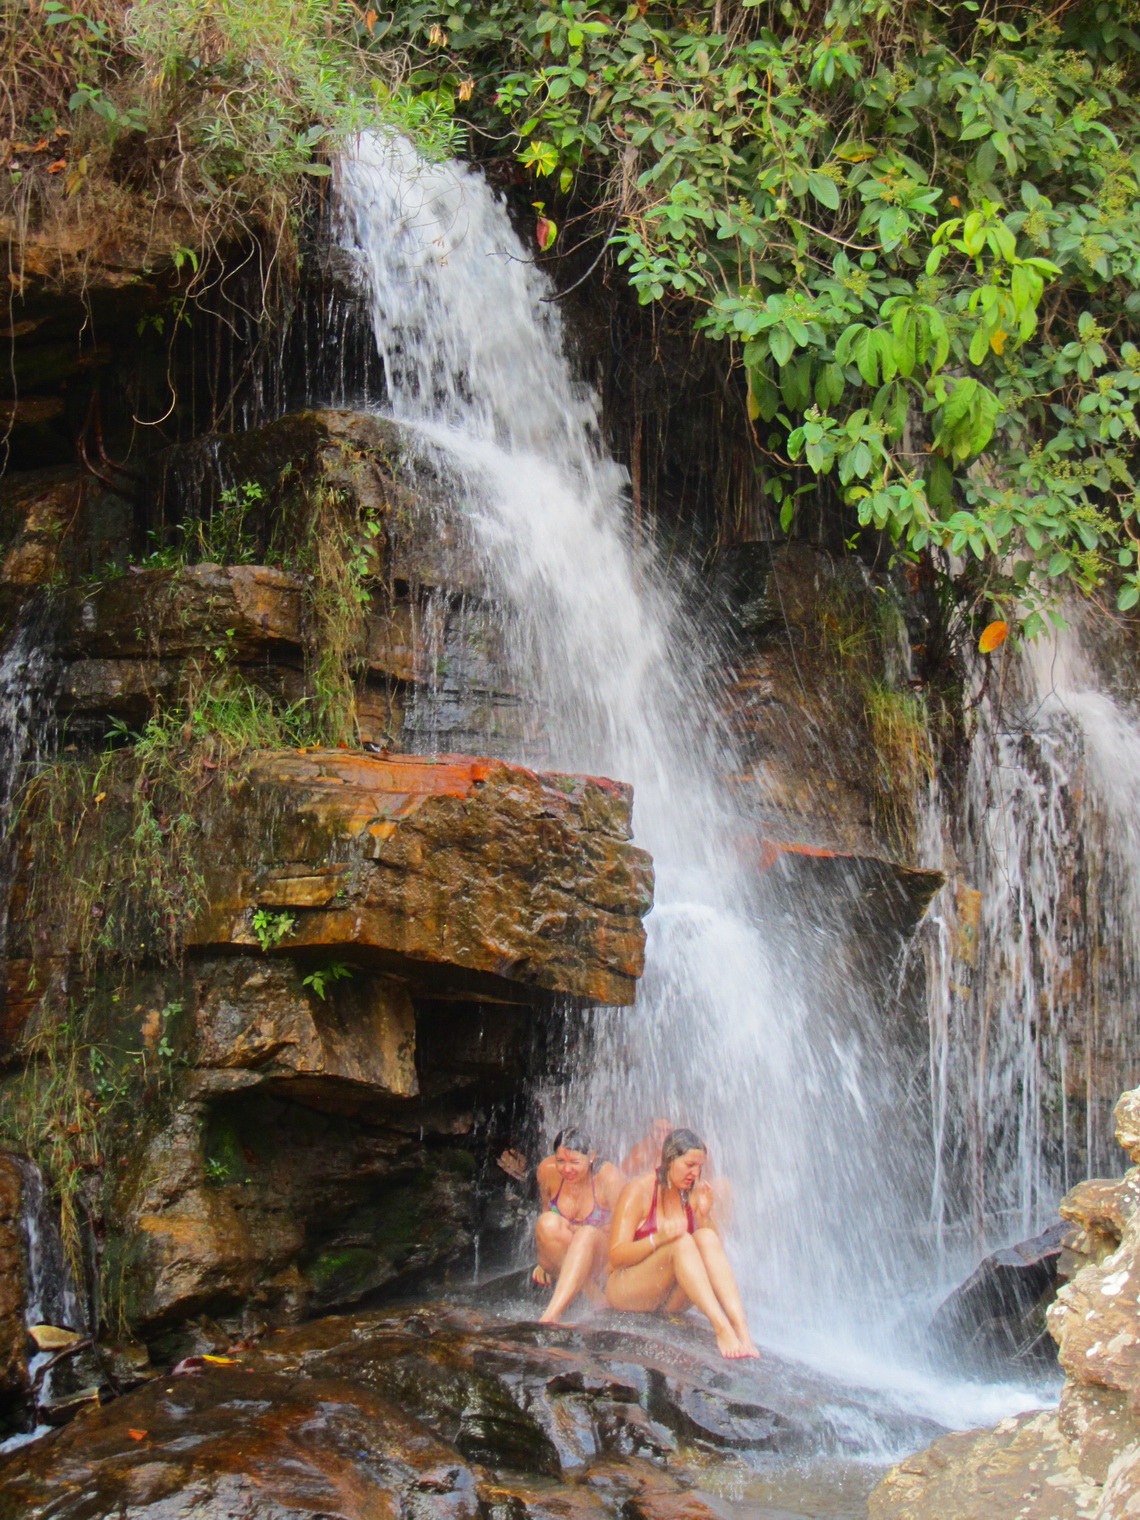 Mermaids of Cachoeira Usina Velha